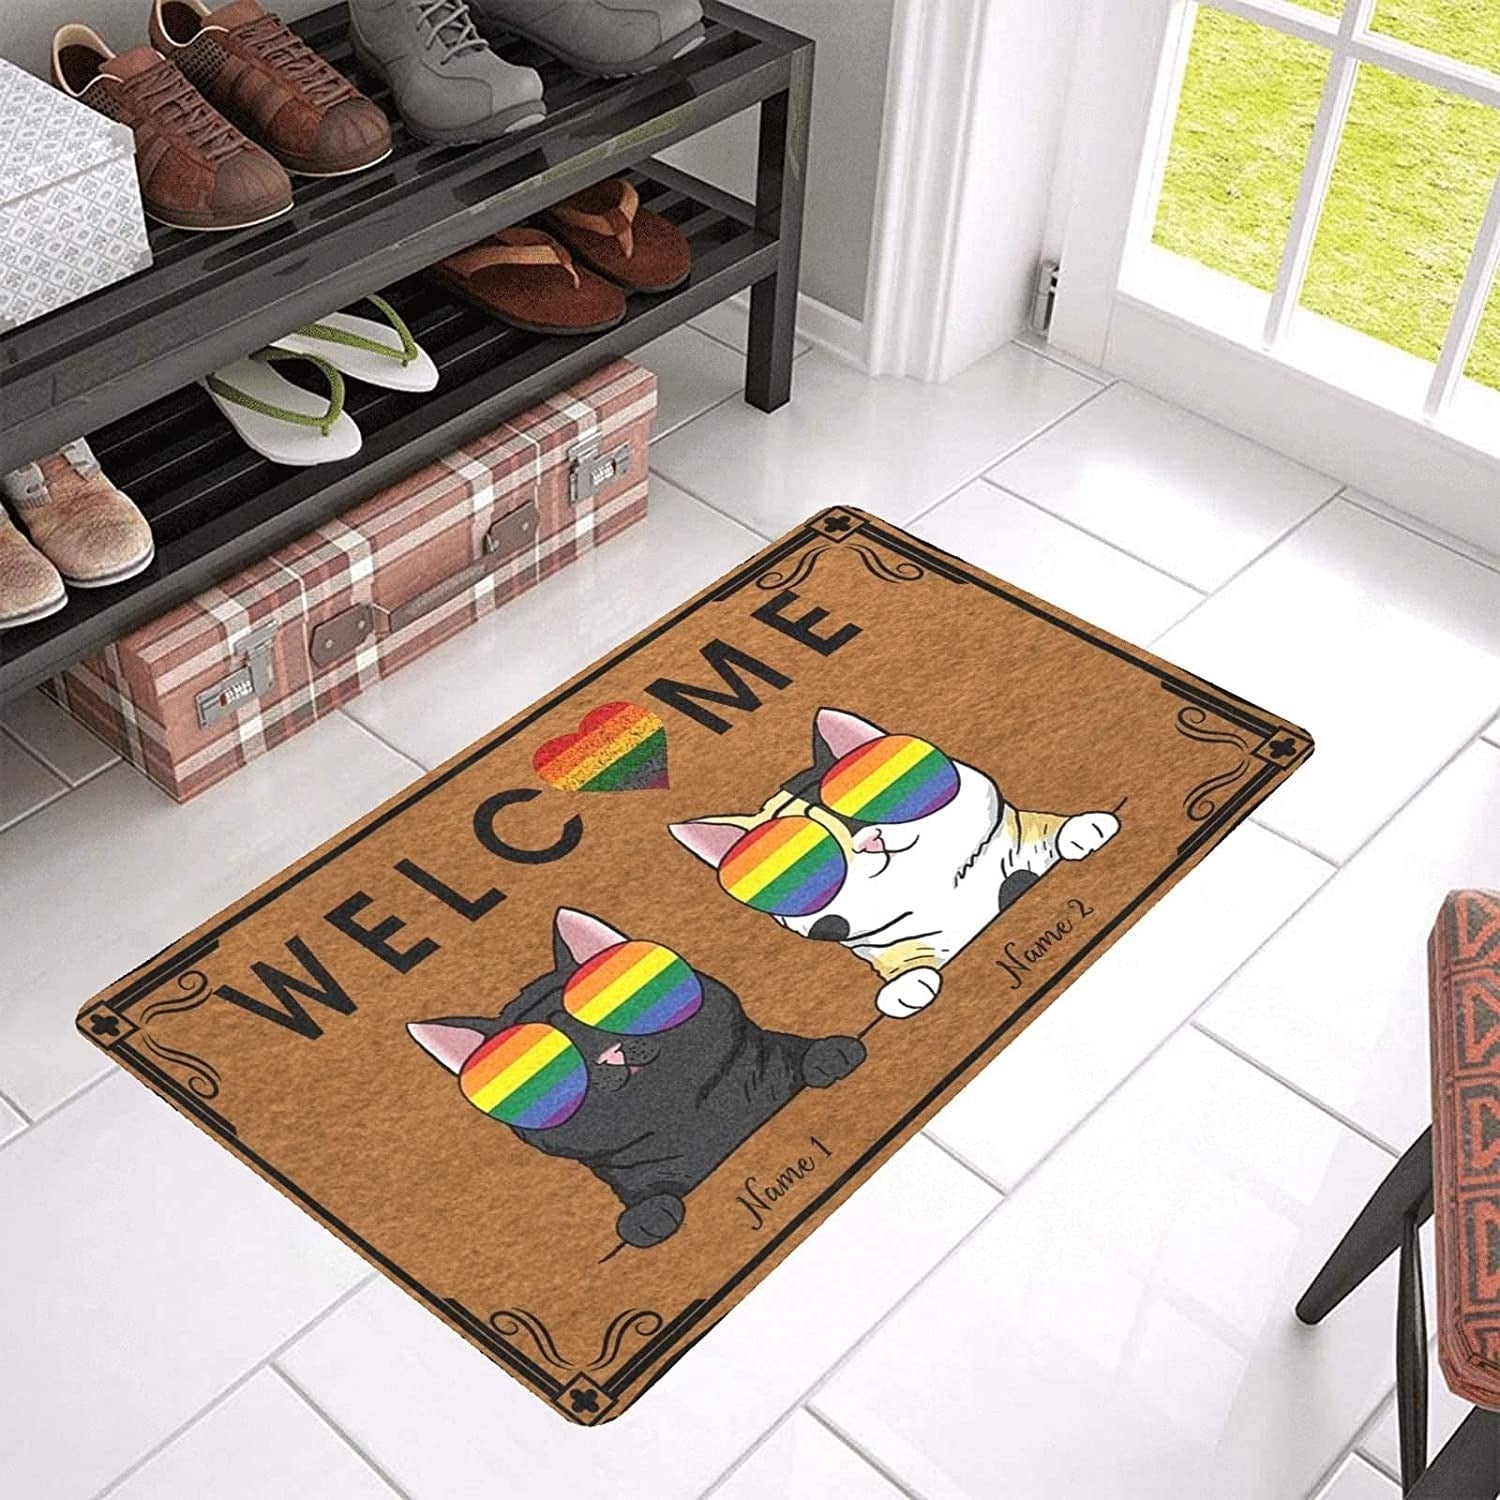 Gay Pride Doormat Personalized Cat Doormat Rainbow Welcome Mat Heart Rainbow Doormat Lgbt Home Decor